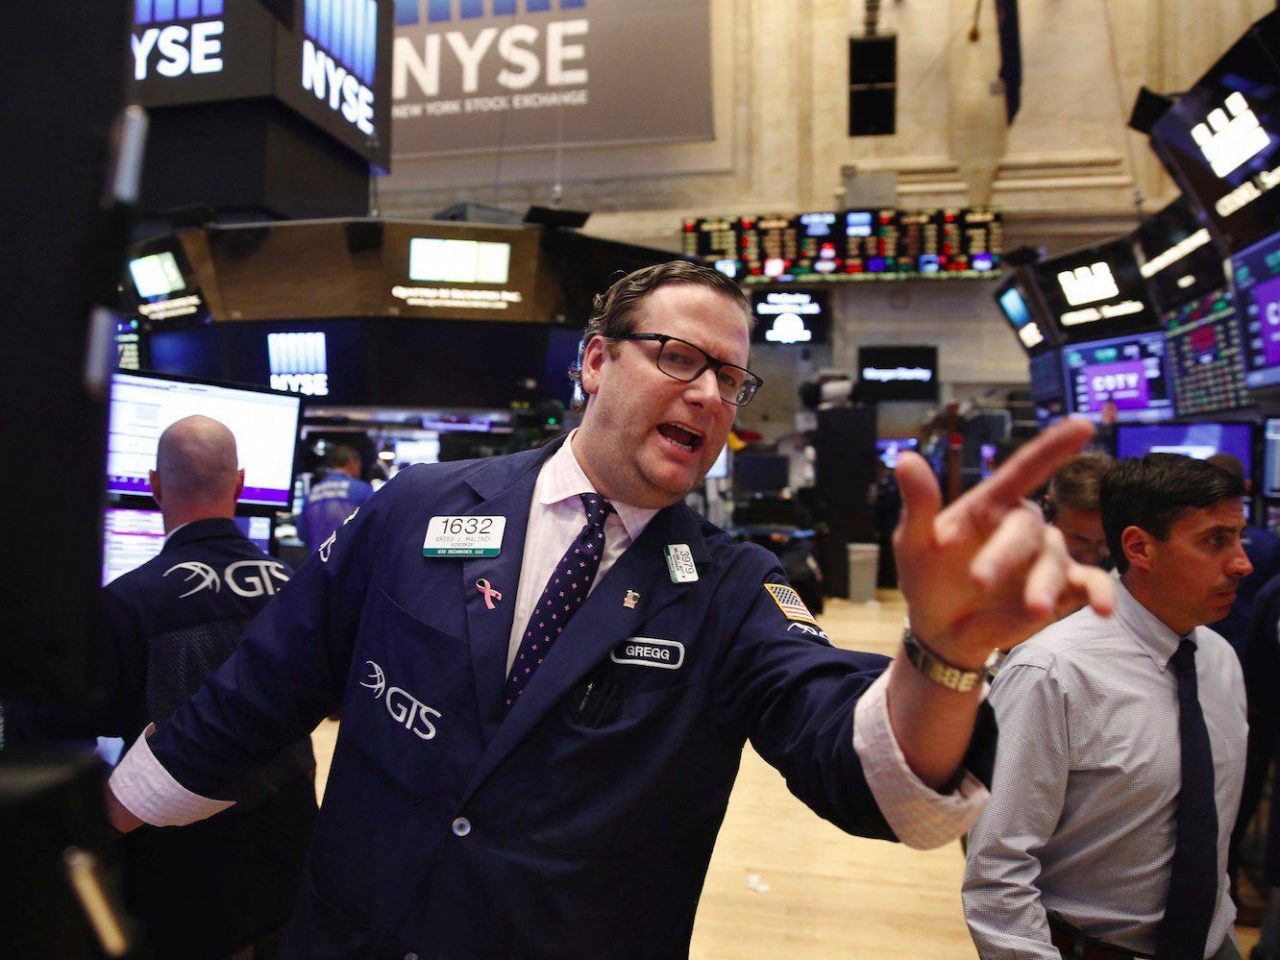 χρηματιστής στη Wall Street παρακολουθεί τη συνεδρίαση